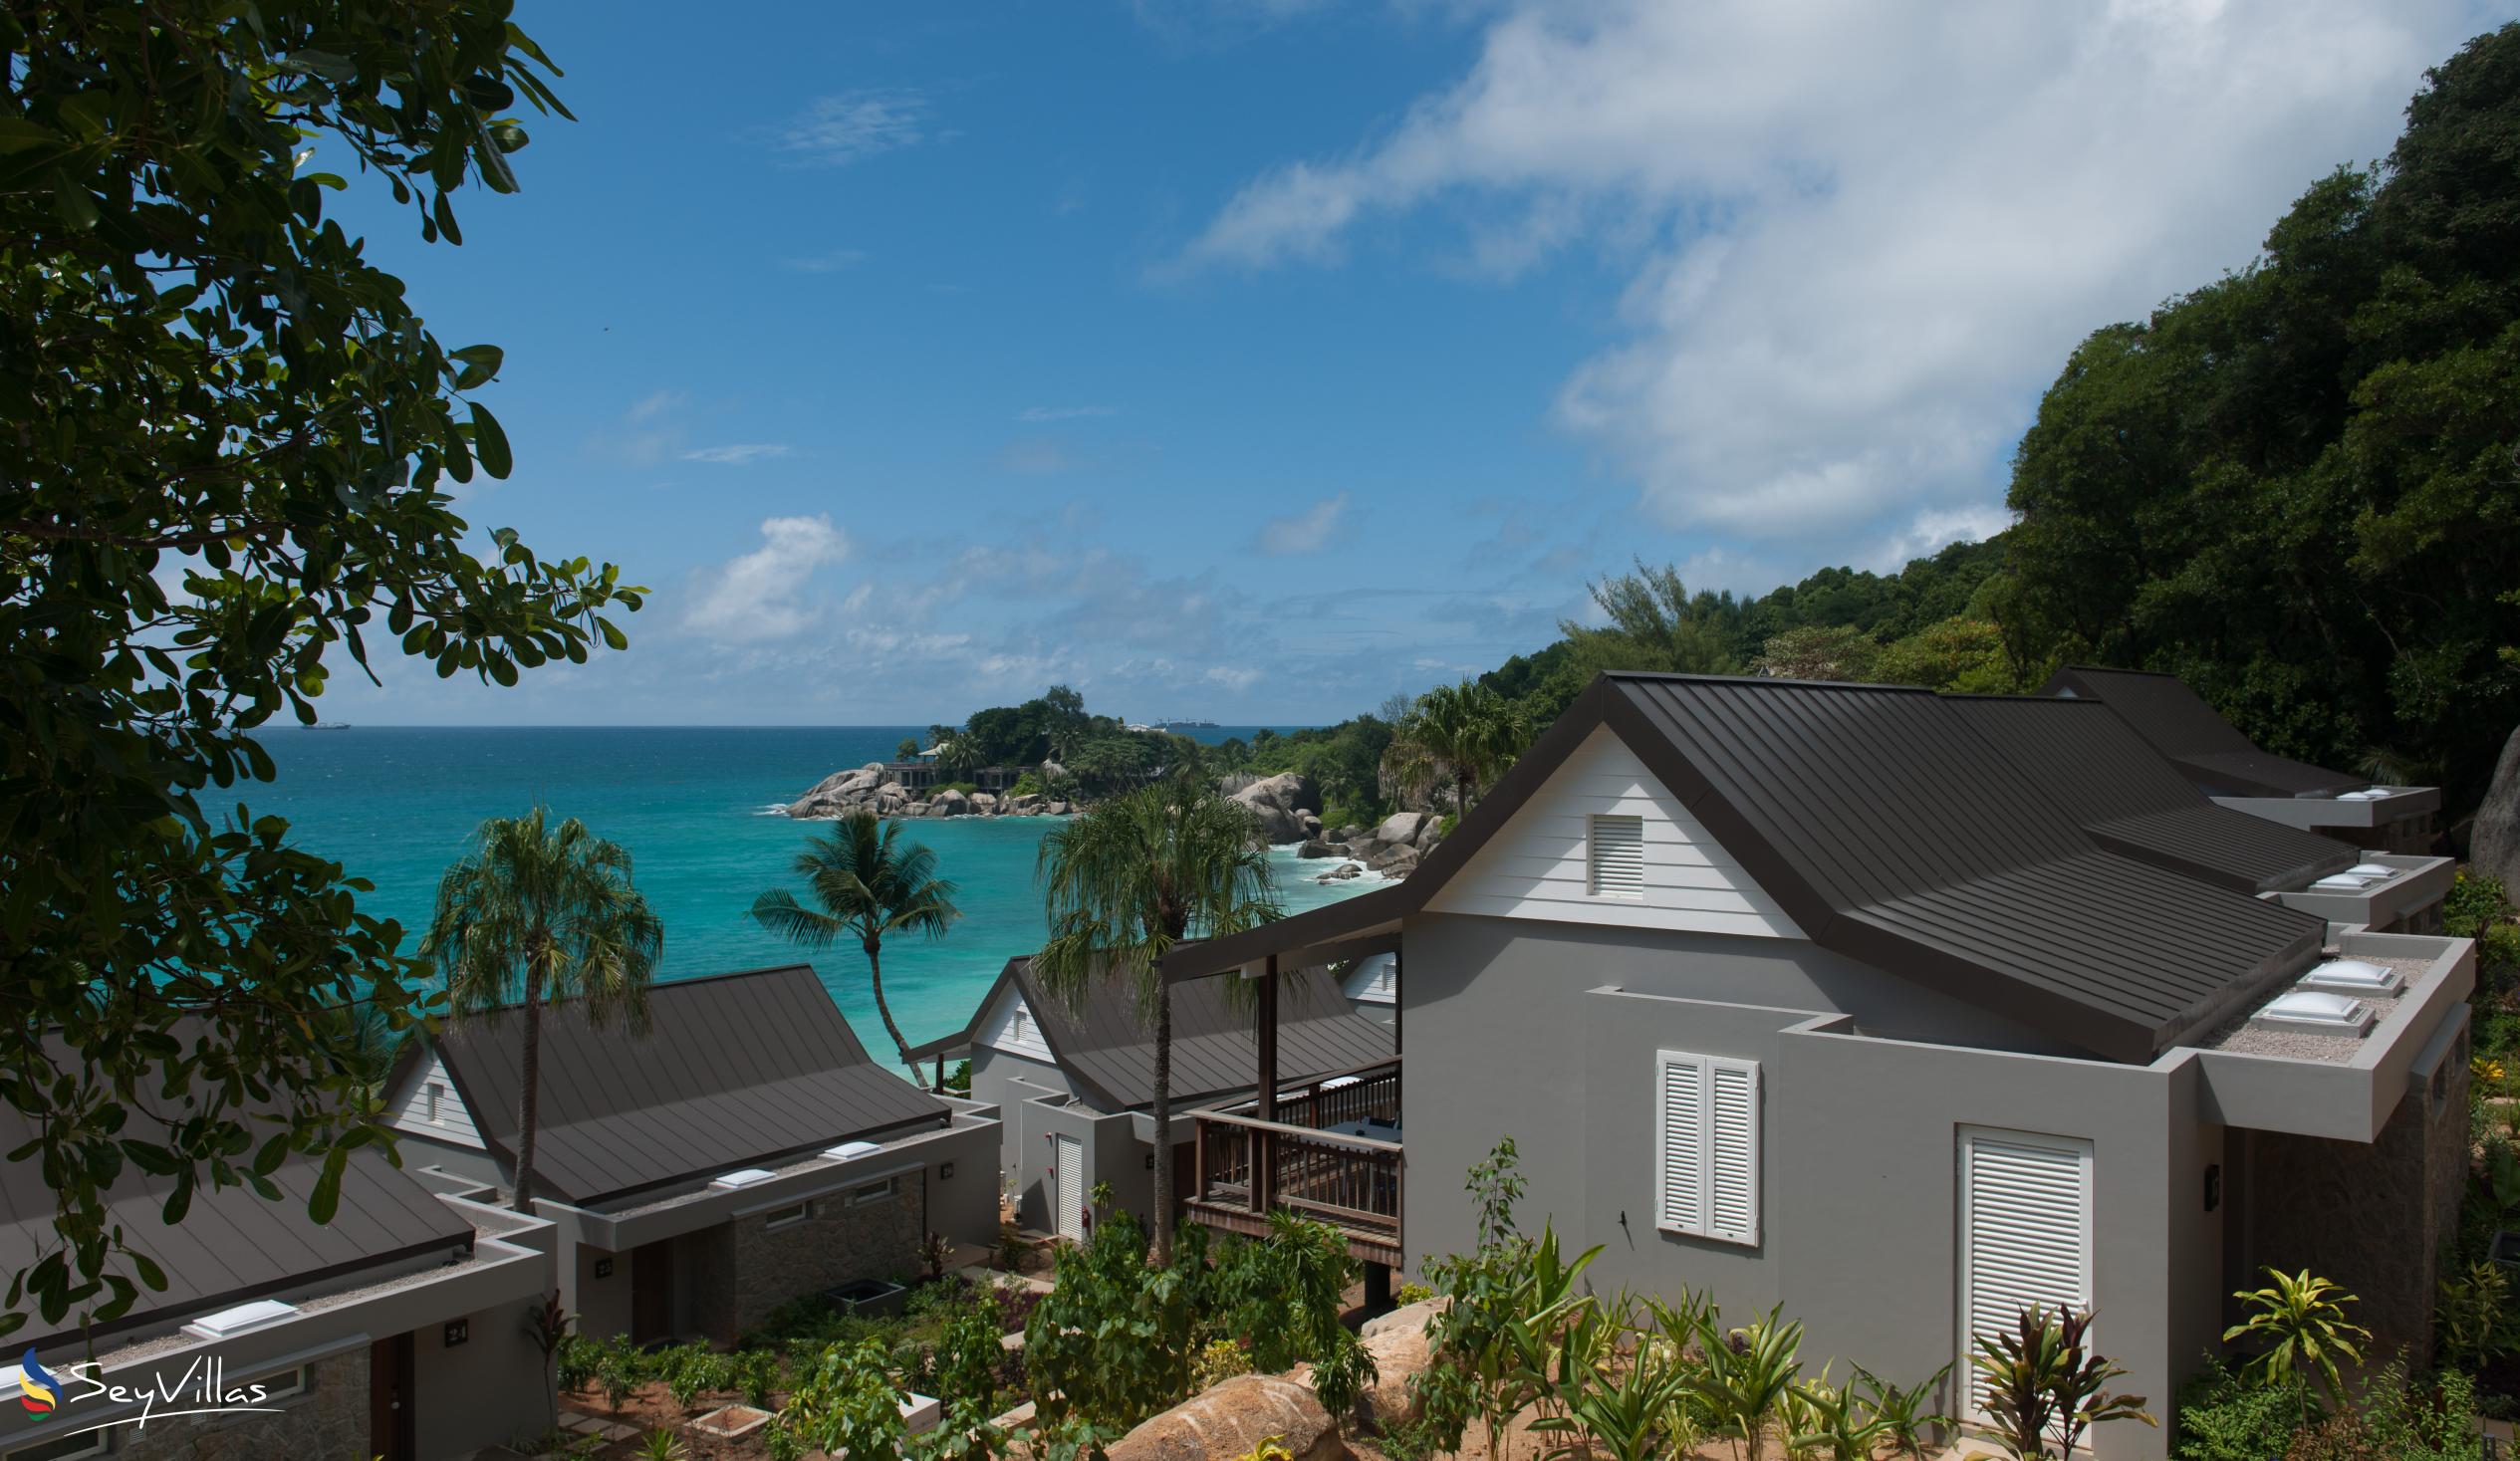 Foto 4: Carana Beach Hotel - Aussenbereich - Mahé (Seychellen)